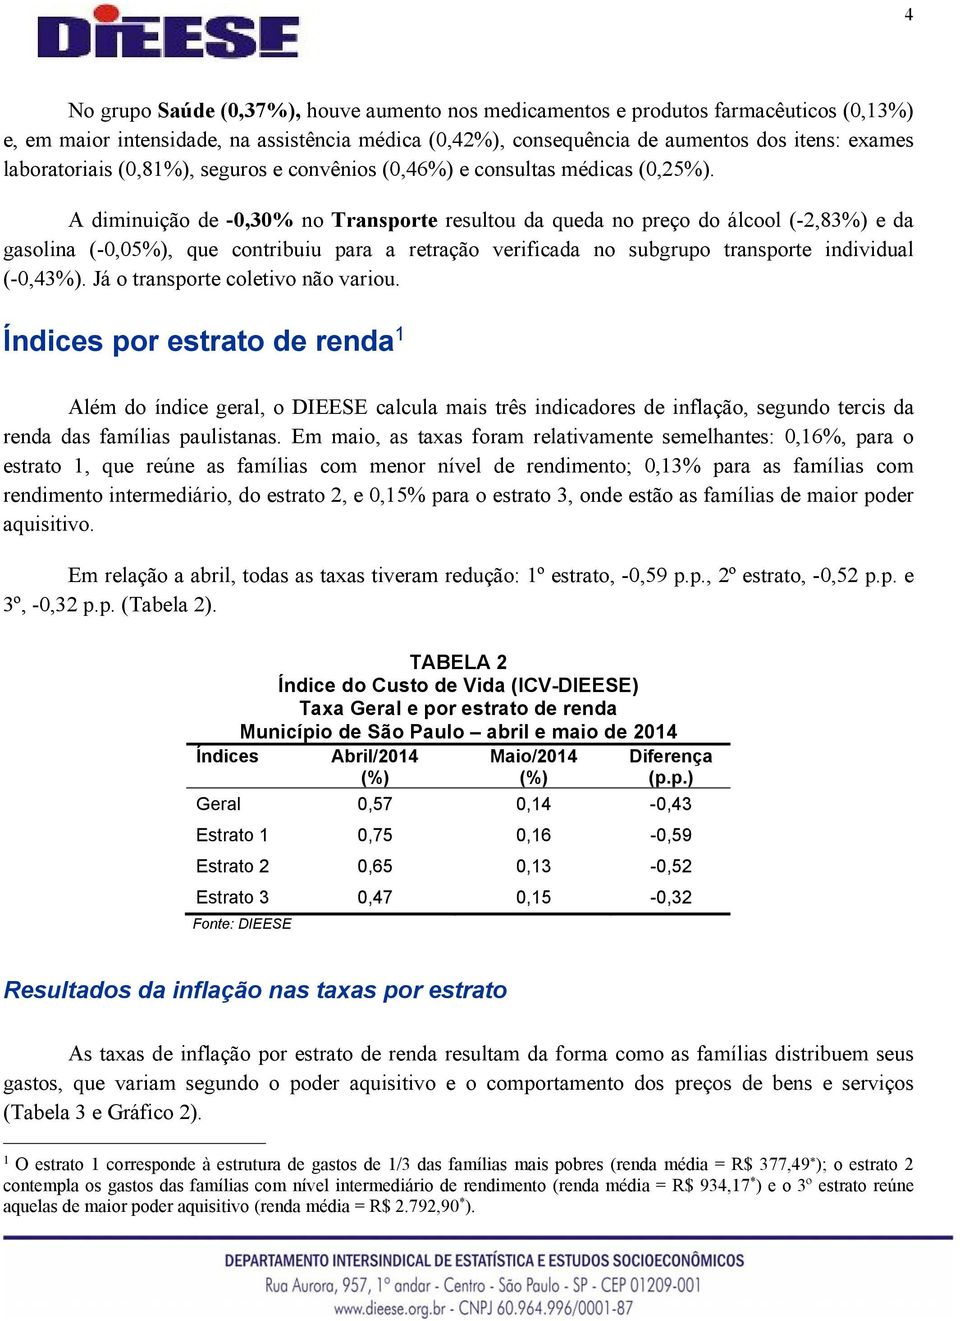 A diminuição de -0,30% no Transporte resultou da queda no preço do álcool (-2,83%) e da gasolina (-0,05%), que contribuiu para a retração verificada no subgrupo transporte individual (-0,43%).